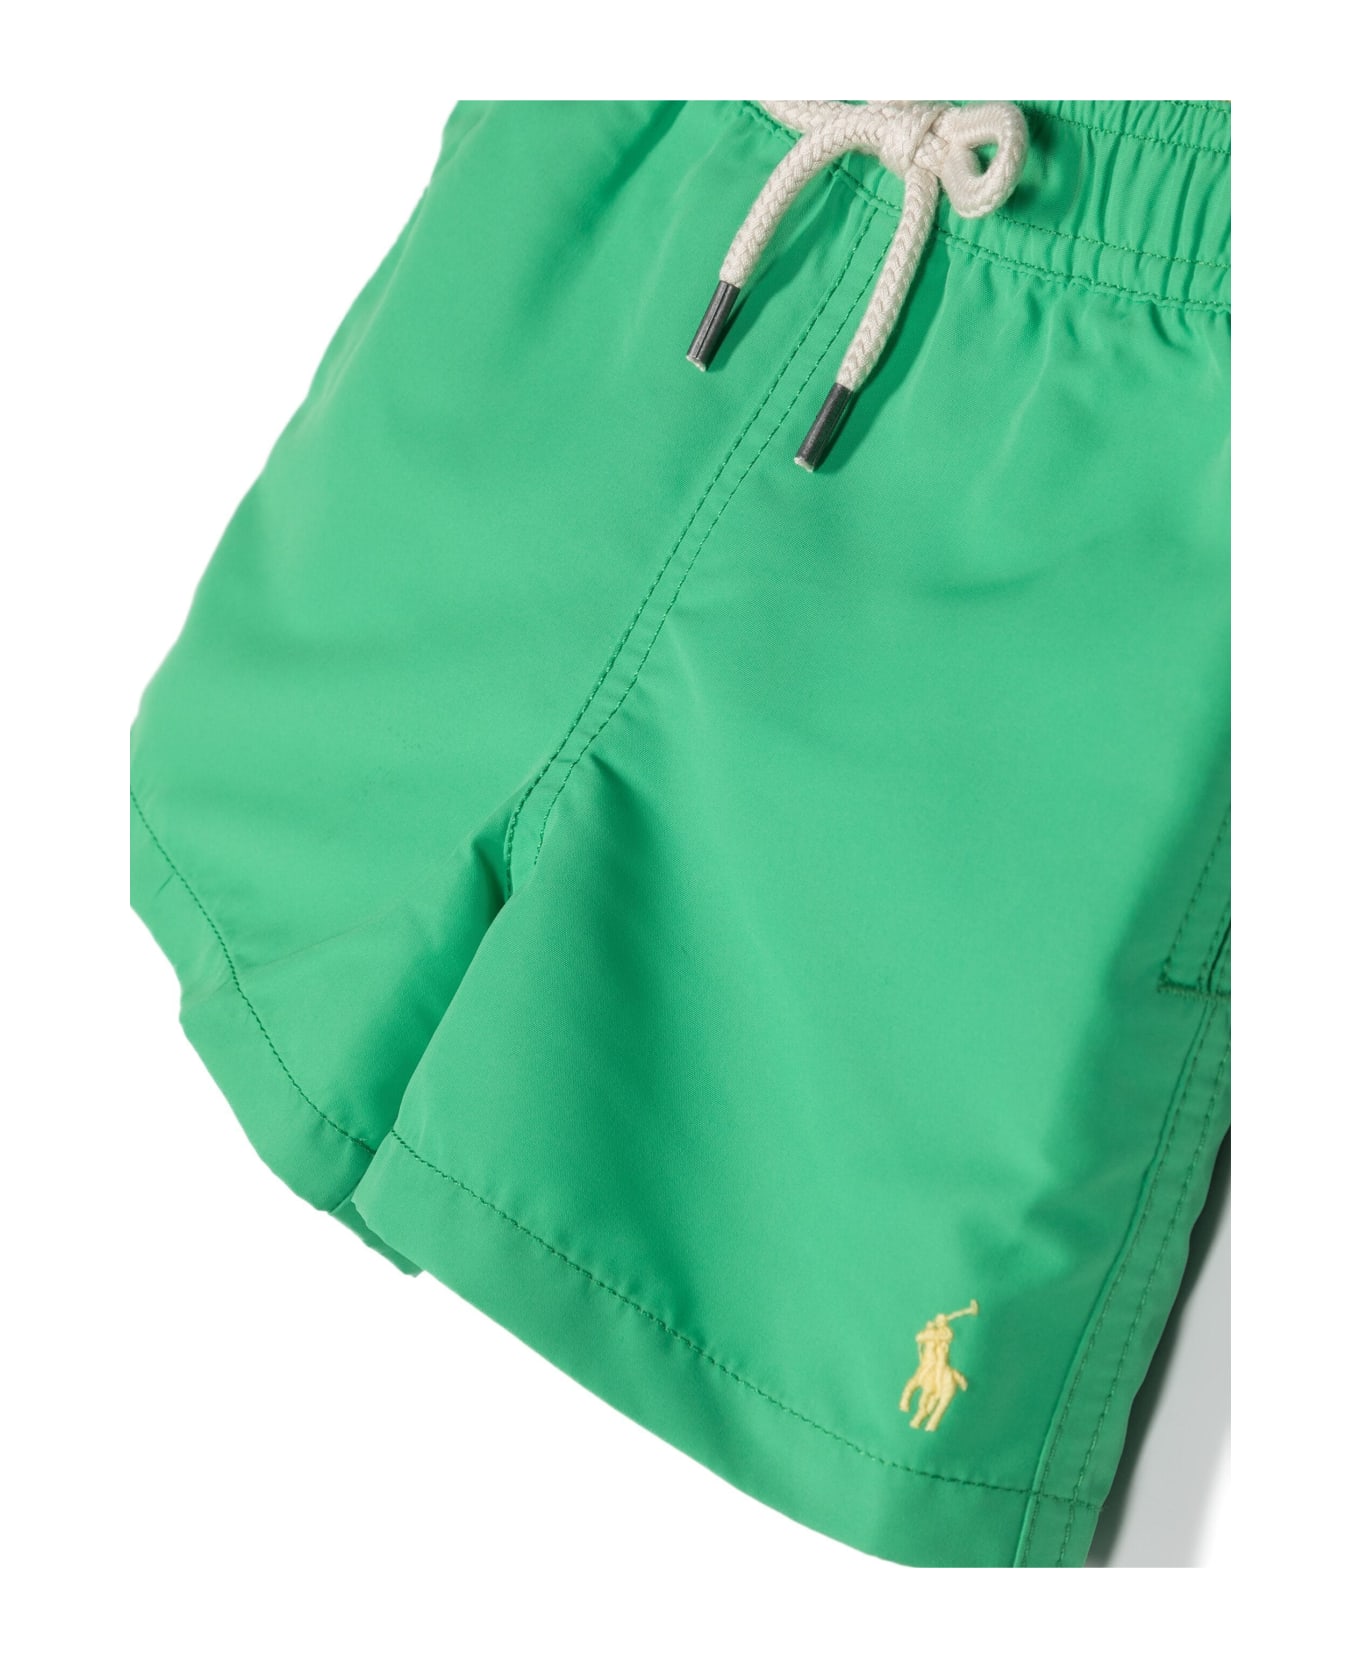 Ralph Lauren Green Swimwear With Yellow Pony - Green